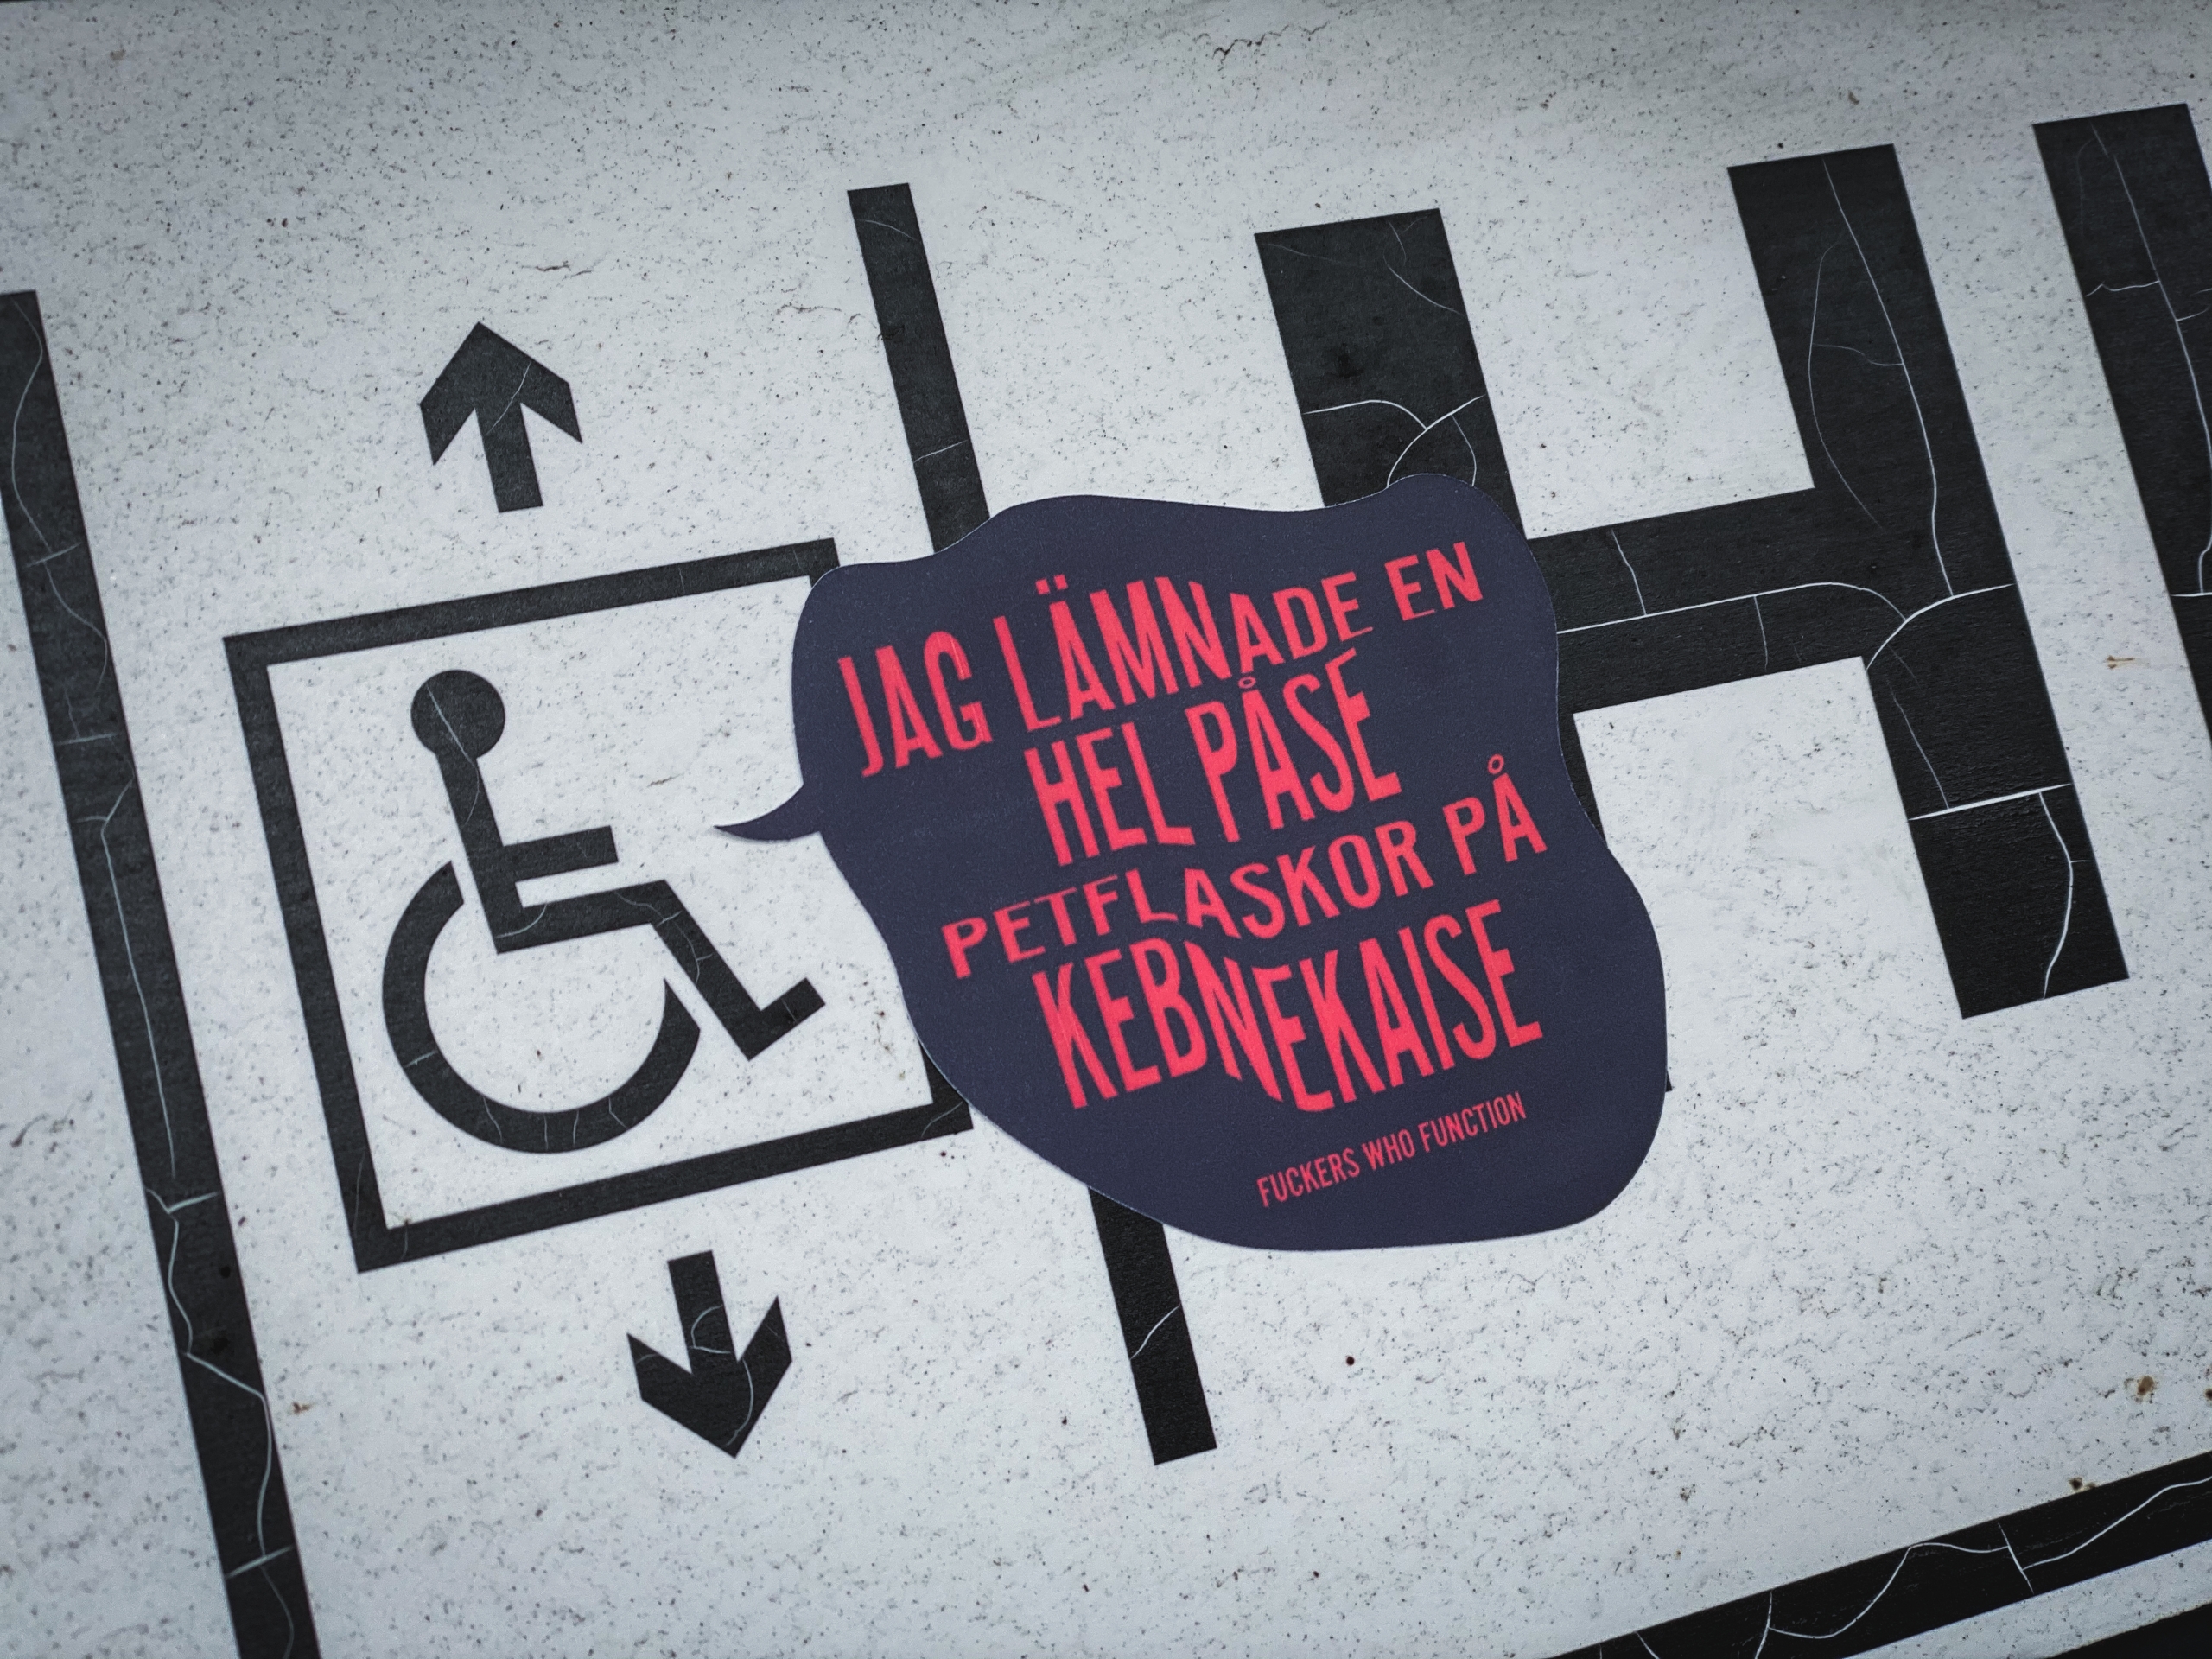 Dekal vid rullstolssymbol på hiss: Jag lämnade en hel påse petflaskor på Kebnekaise